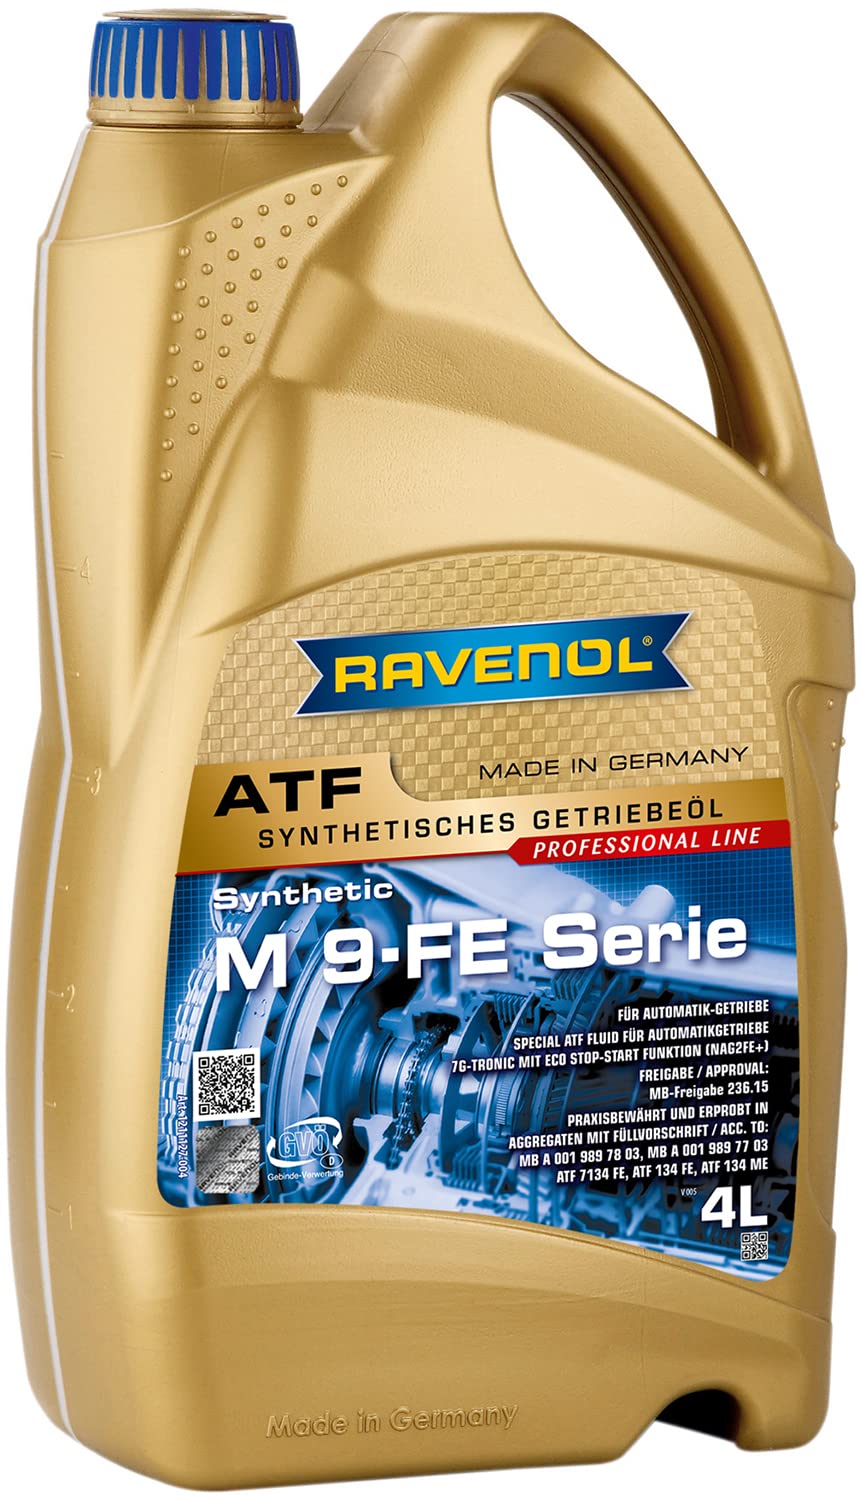 RAVENOL ATF M 9-FE Serie von RAVENOL